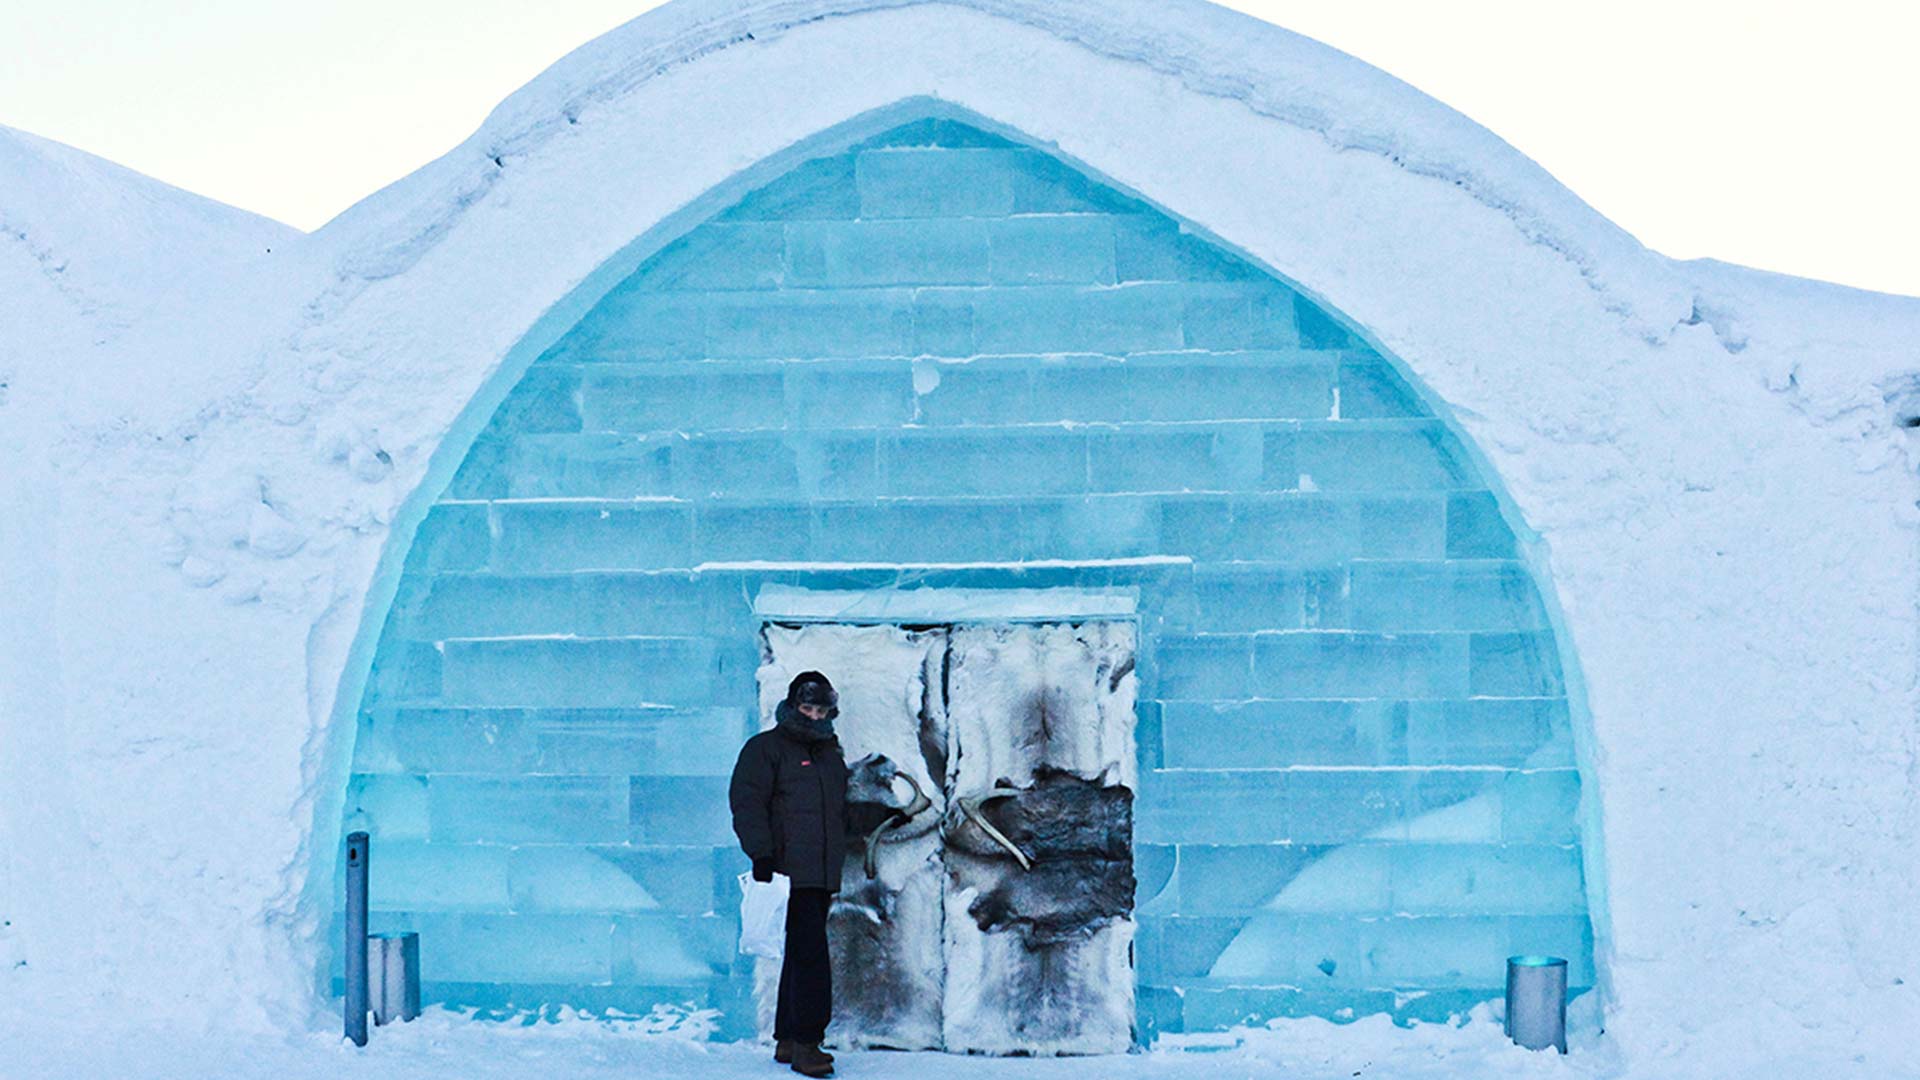 The Icehotel in Kiruna